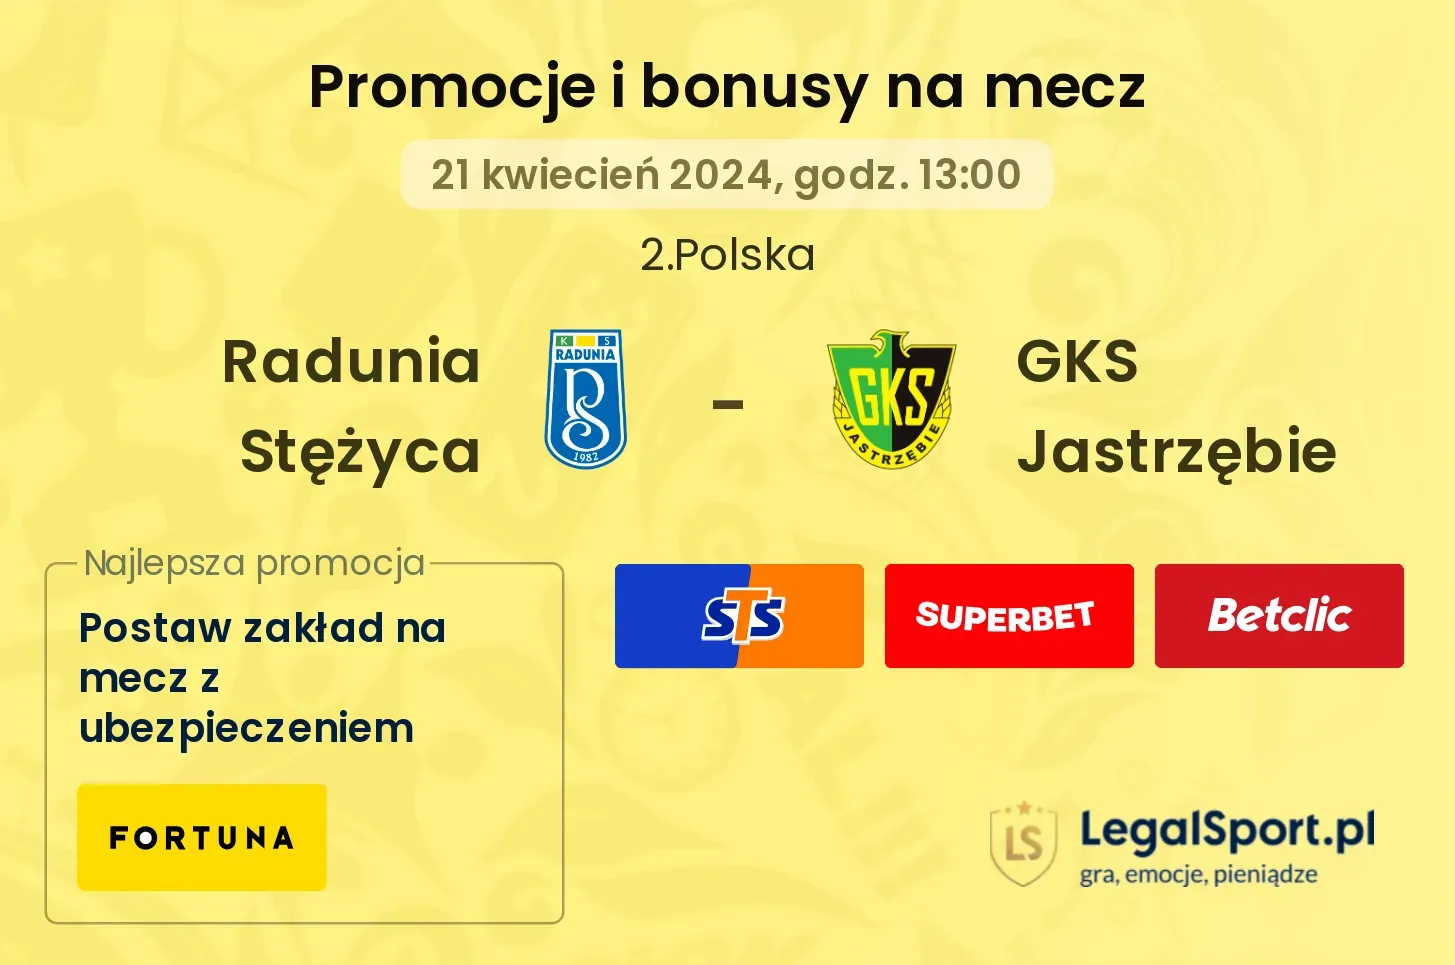 Radunia Stężyca - GKS Jastrzębie promocje bonusy na mecz